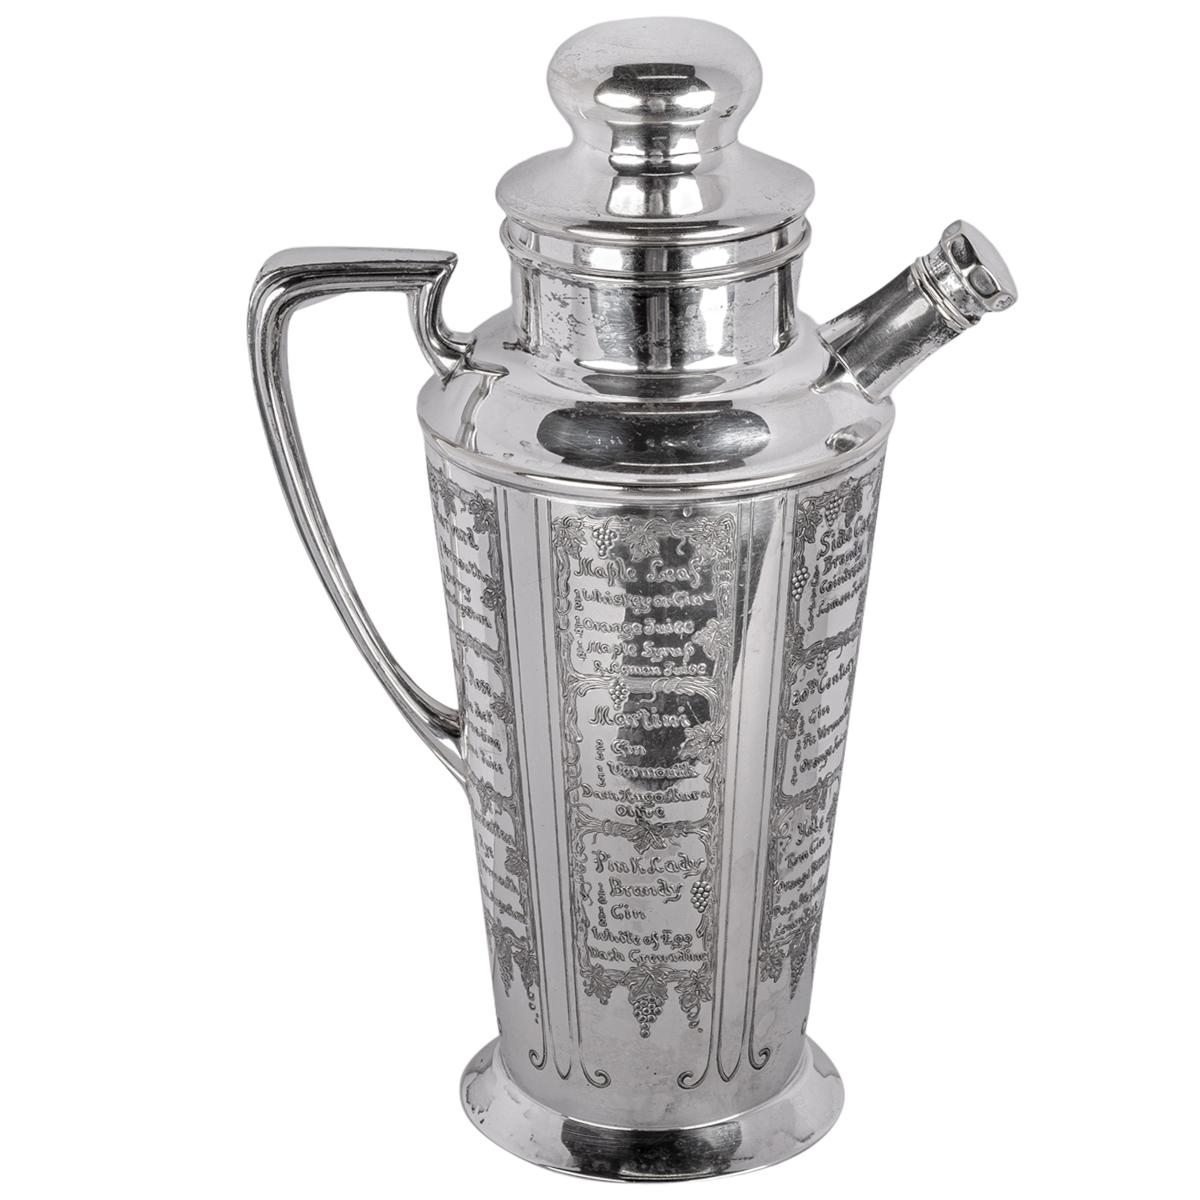 Un bon gobelet à cocktail/récipient en métal argenté Art Antiques, 1930.
Le shaker a été fabriqué par Bernard Rice & Sons et porte les titres 